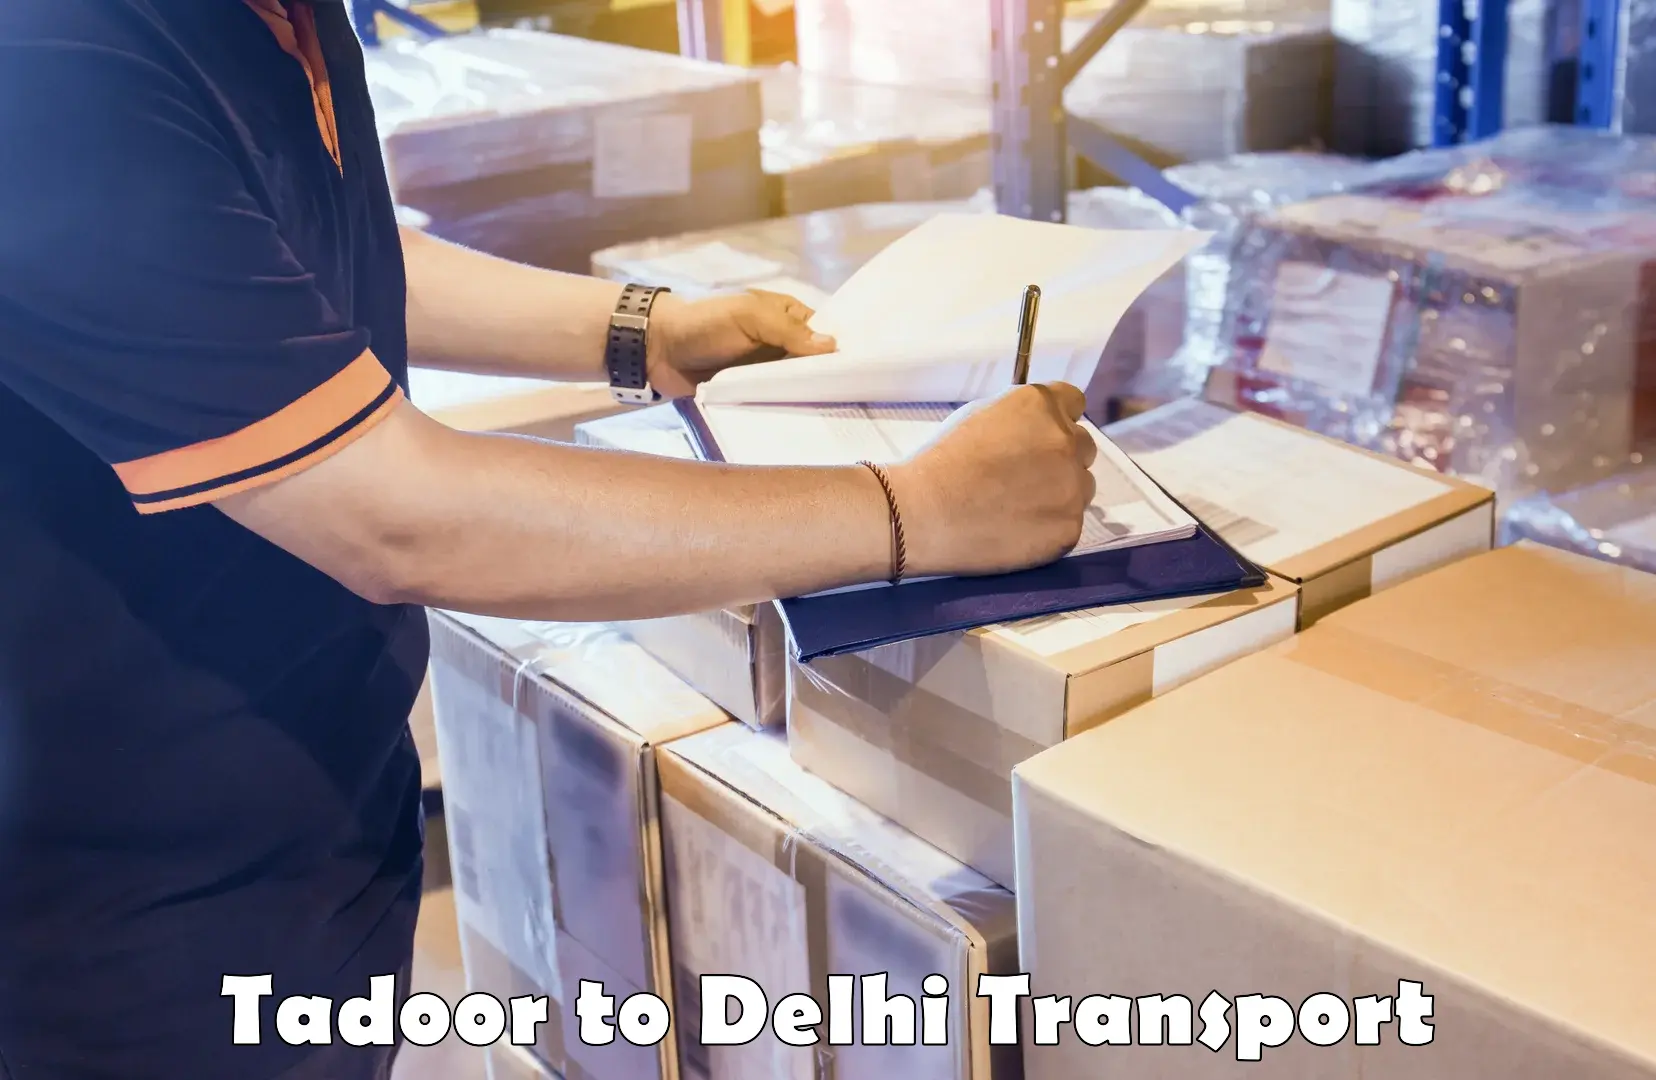 Interstate transport services Tadoor to IIT Delhi